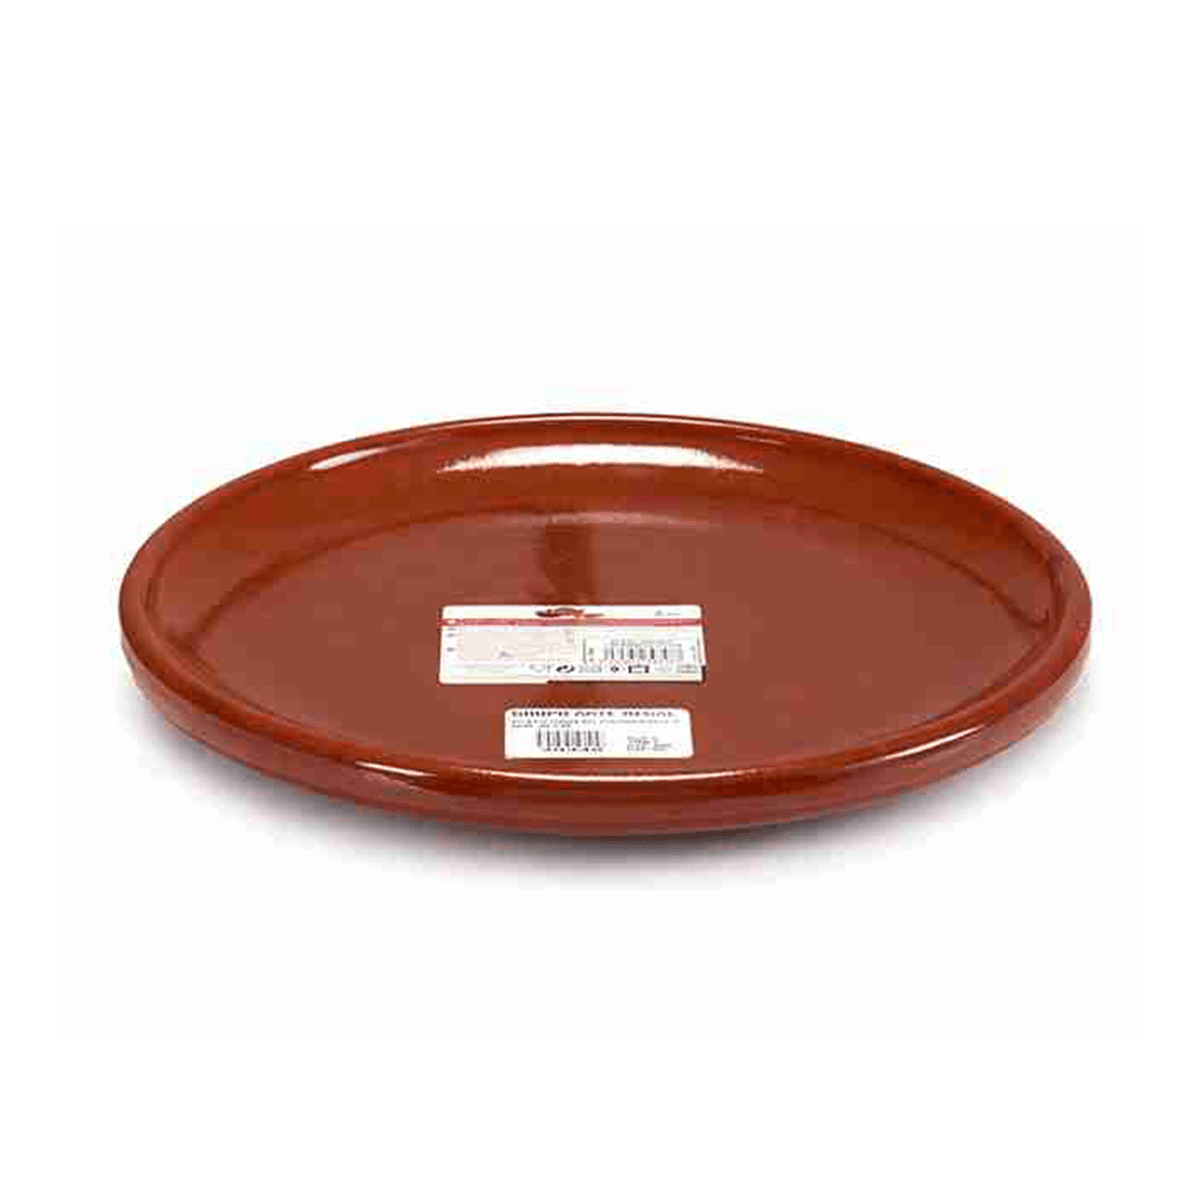 صحن فخار ستيك دائري 30 سم صناعة اسبانيا بني آرت ريجال Arte Regal Brown Clay Steak Thick Plate